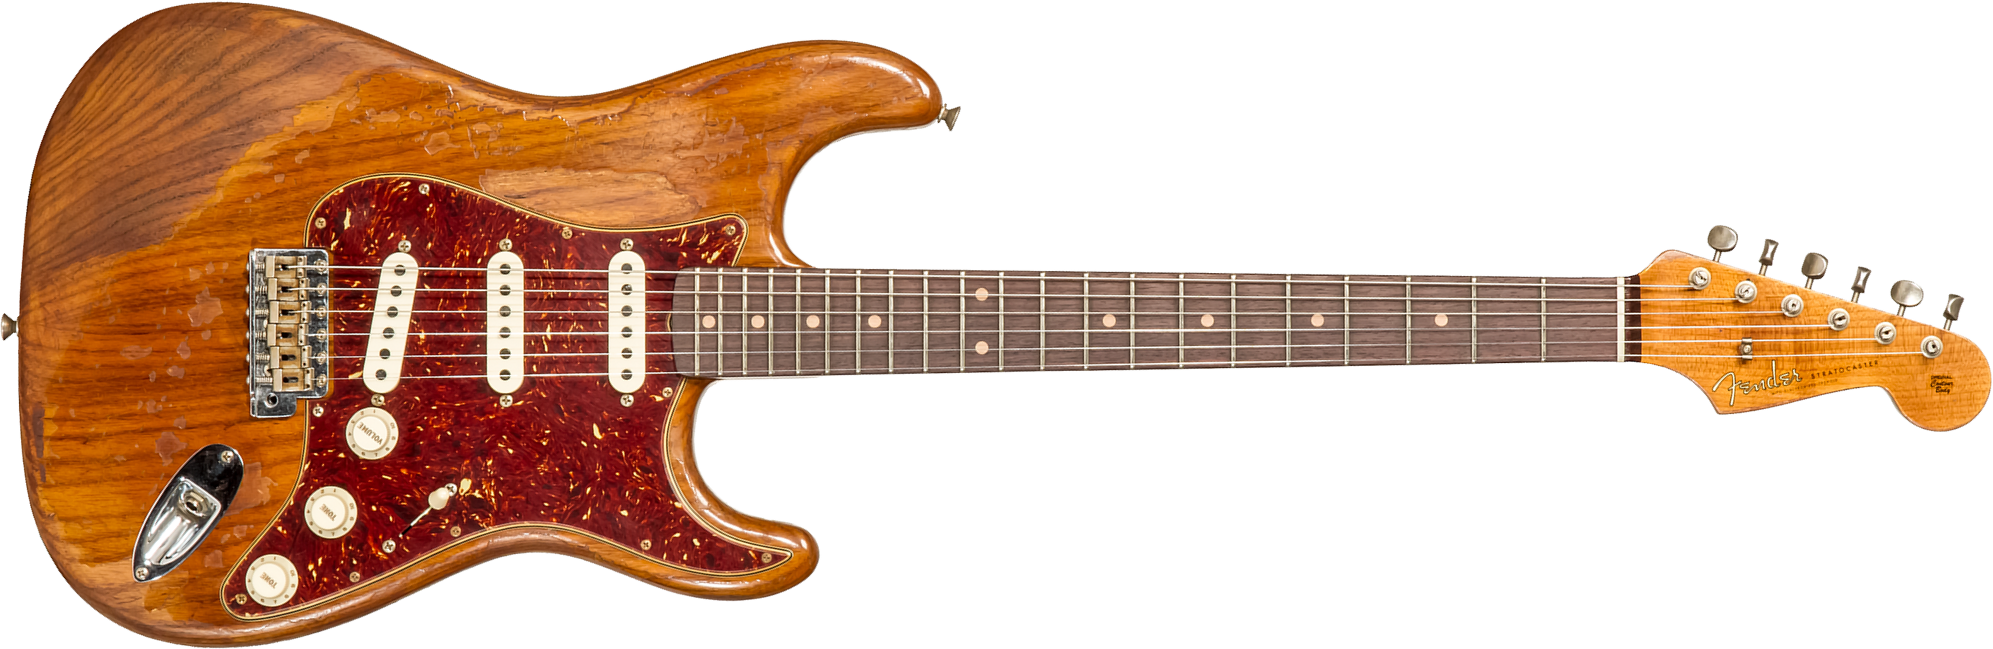 Fender Custom Shop Strat 1961 3s Trem Rw #cz570266 - Super Heavy Relic Natural - Guitare Électrique Forme Str - Main picture